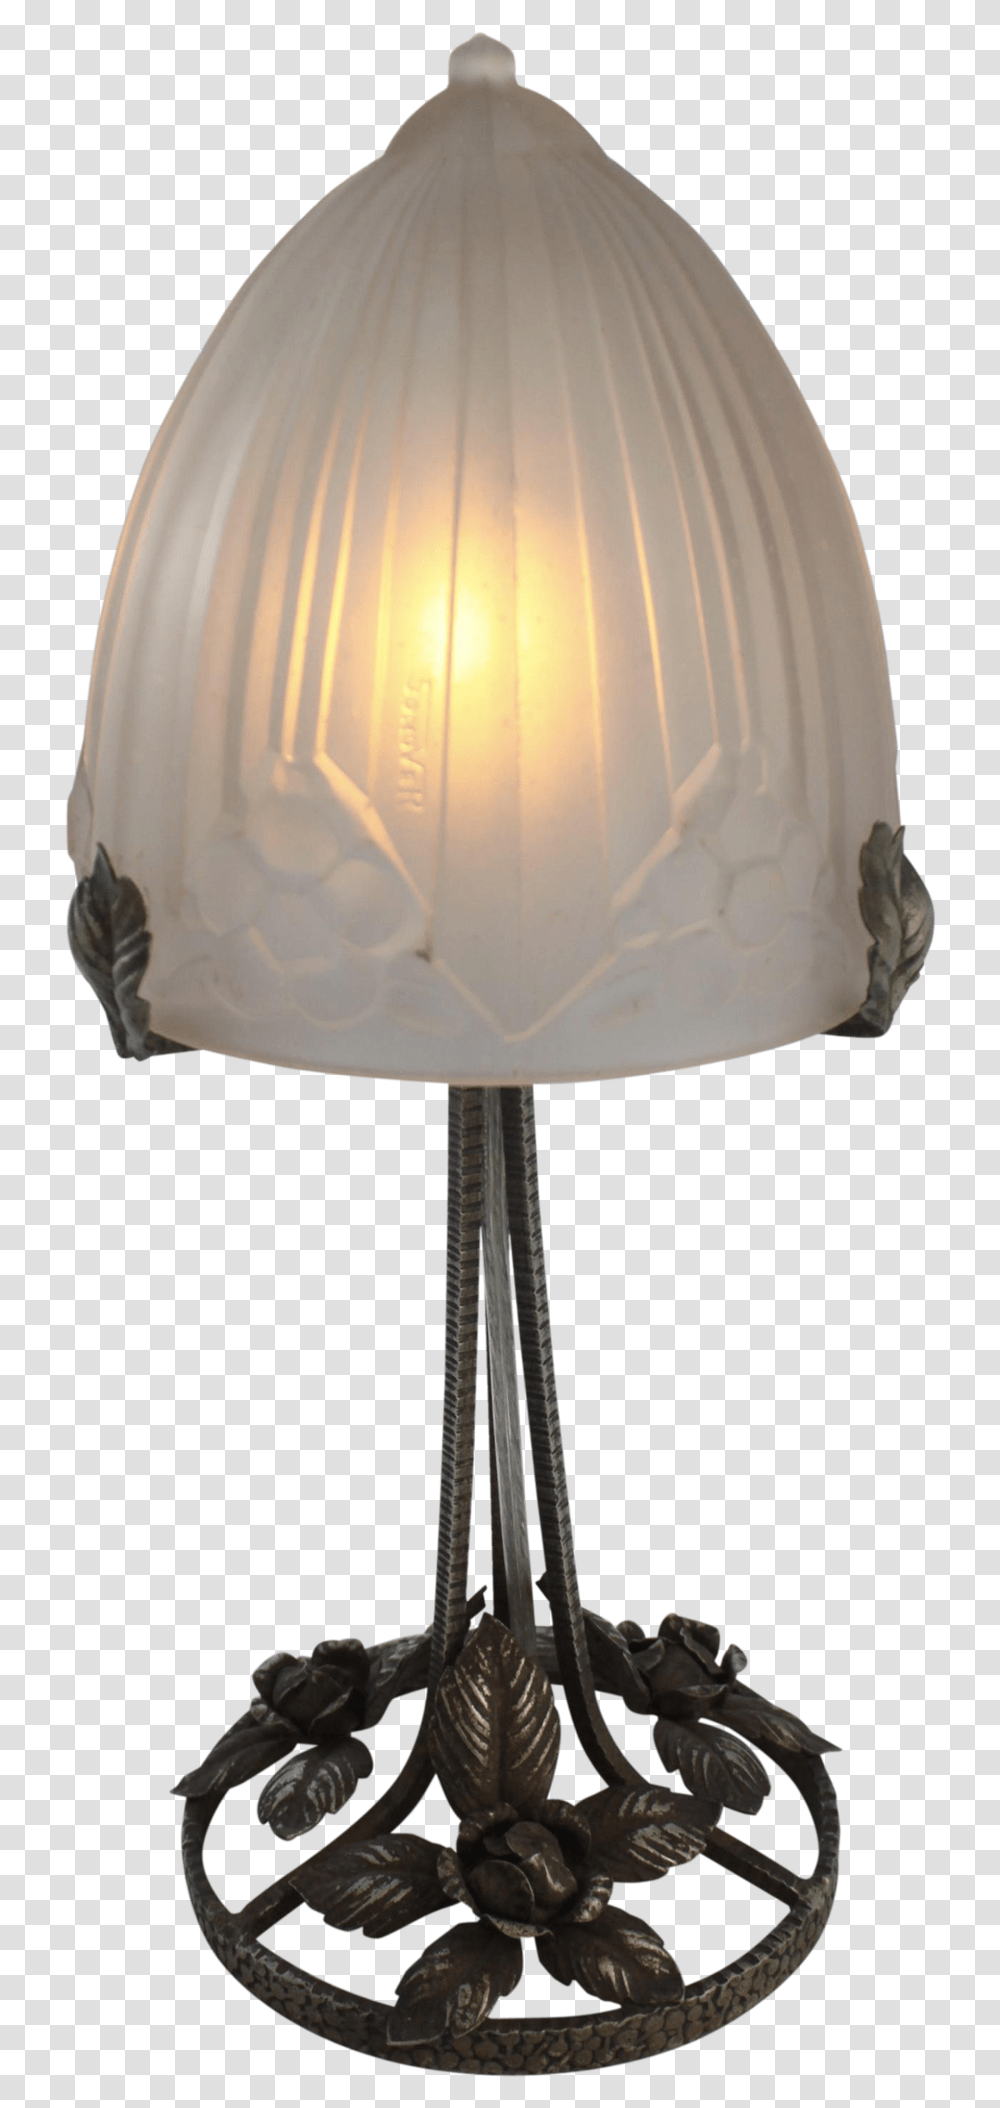 Download Hd 44 Elegant Art Deco Desk Lamp Pics Light Desk Lamp Transparent Png